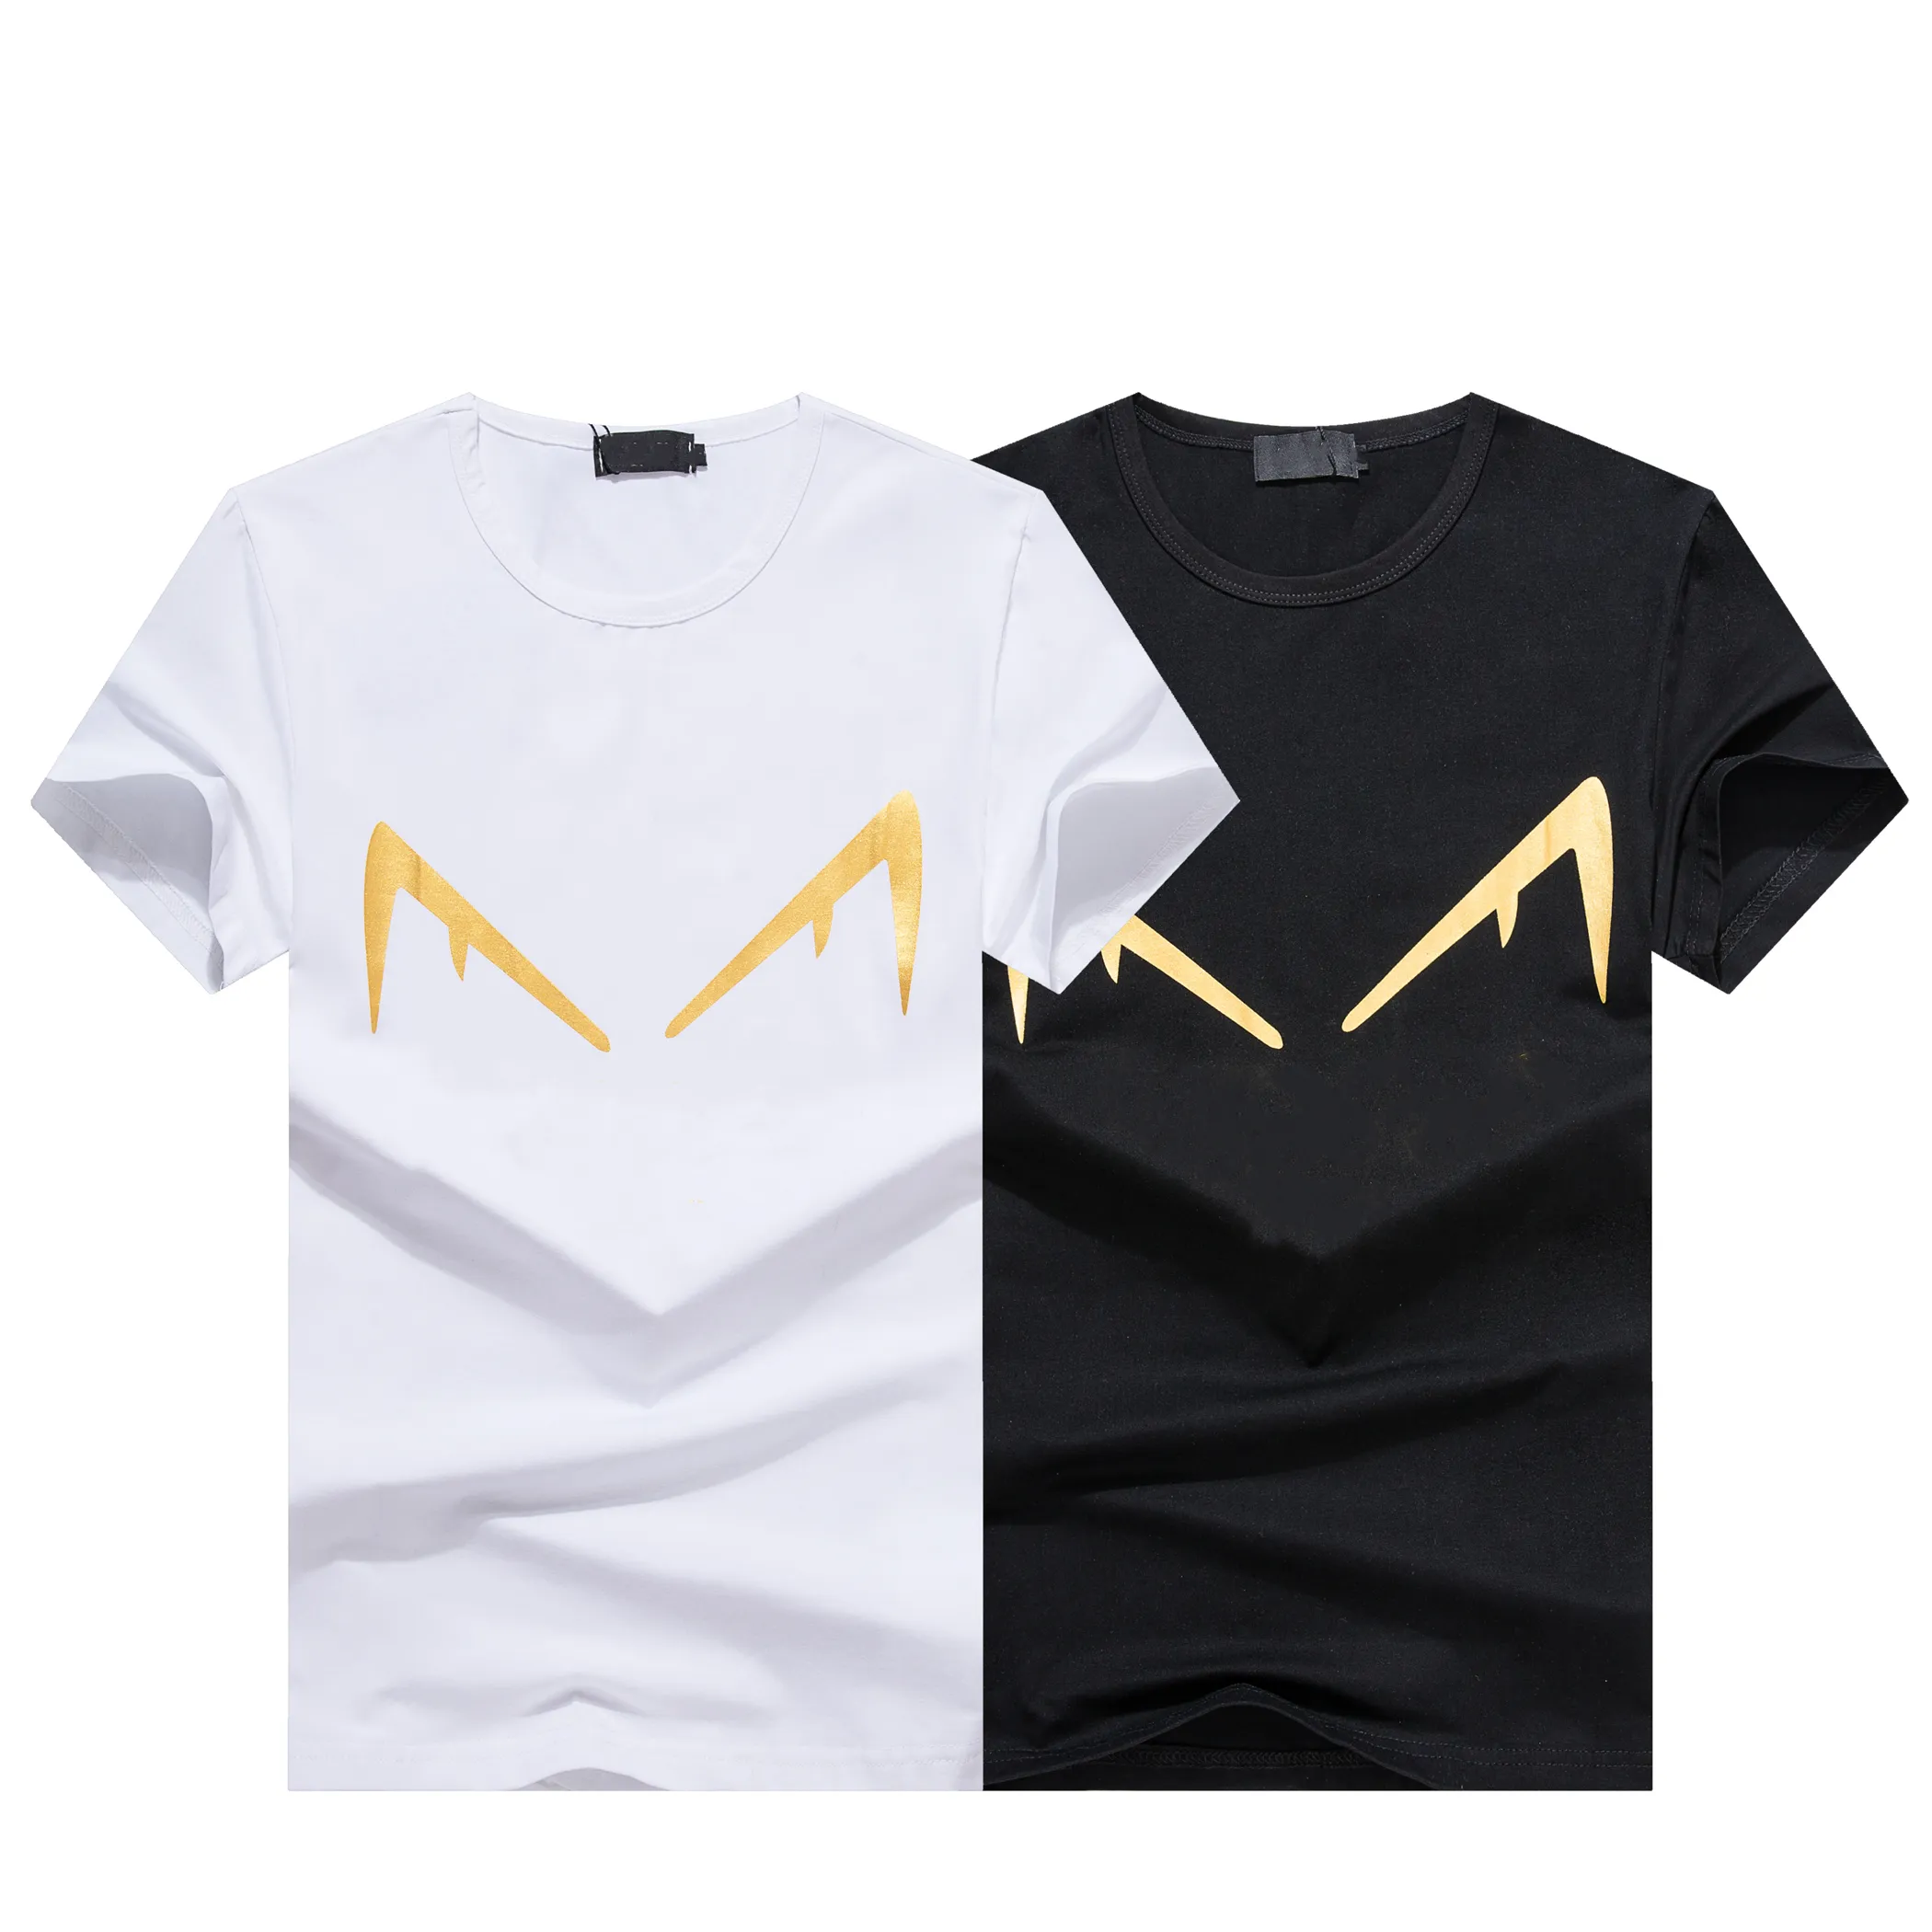 Мужская дизайнерская футболка Мужская женская футболка с буквенным принтом с короткими рукавами Летние рубашки Мужские свободные футболки Азиатский размер S-6XL